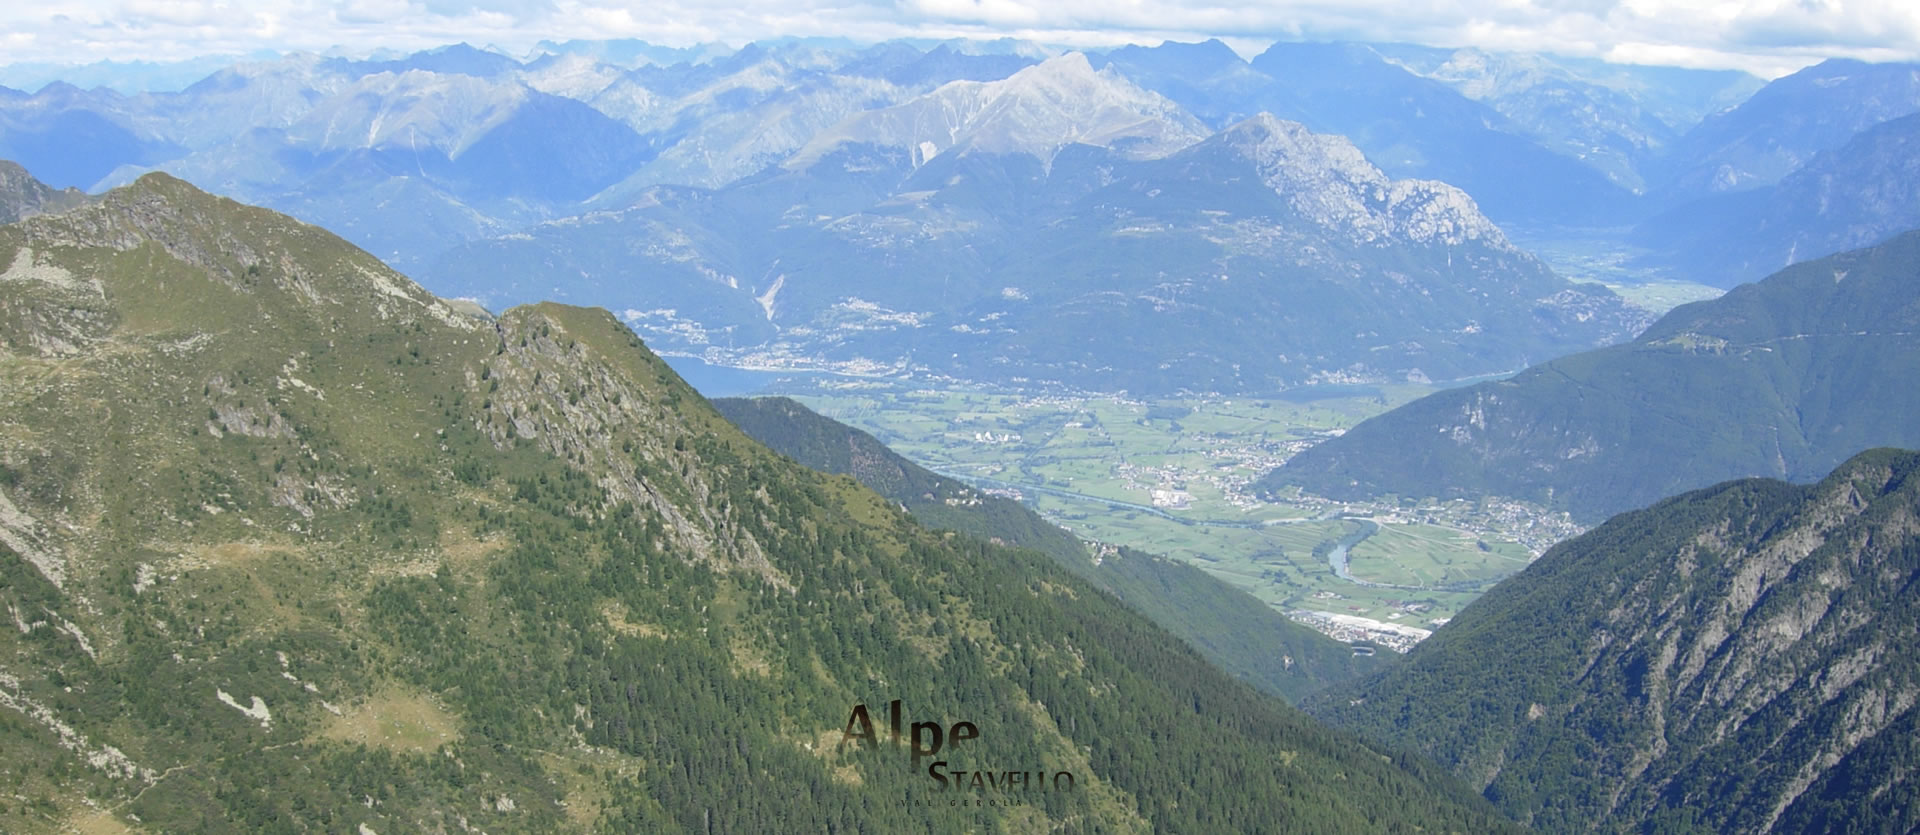 Il Territorio Alpe Stavello - Azienda agricola Alpe Stavello - Rifugio Valgerola